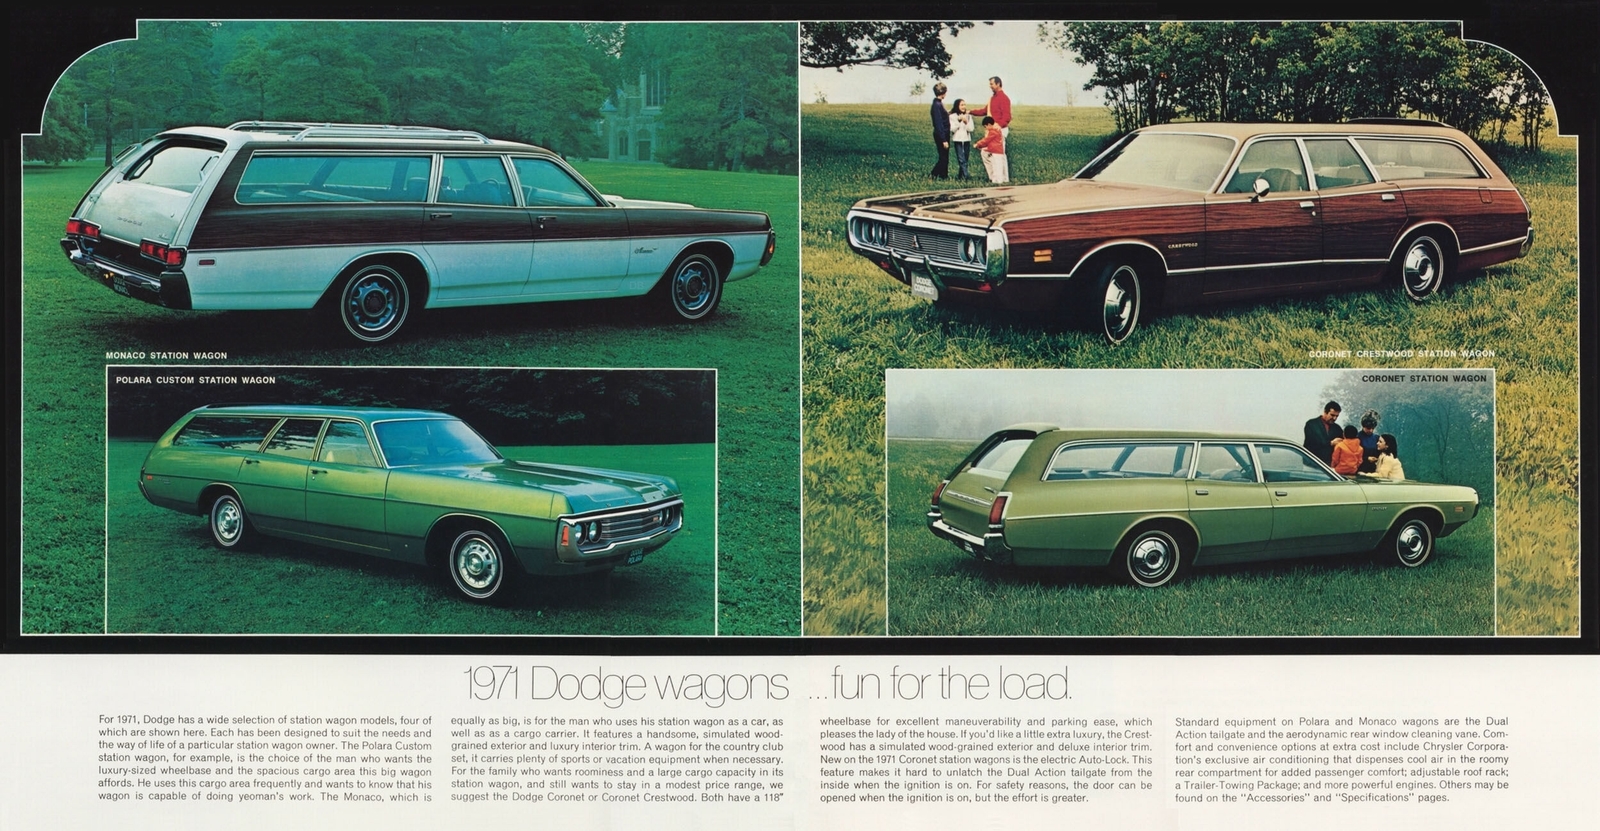 n_1971 Dodge Polara and Monaco-10-11.jpg